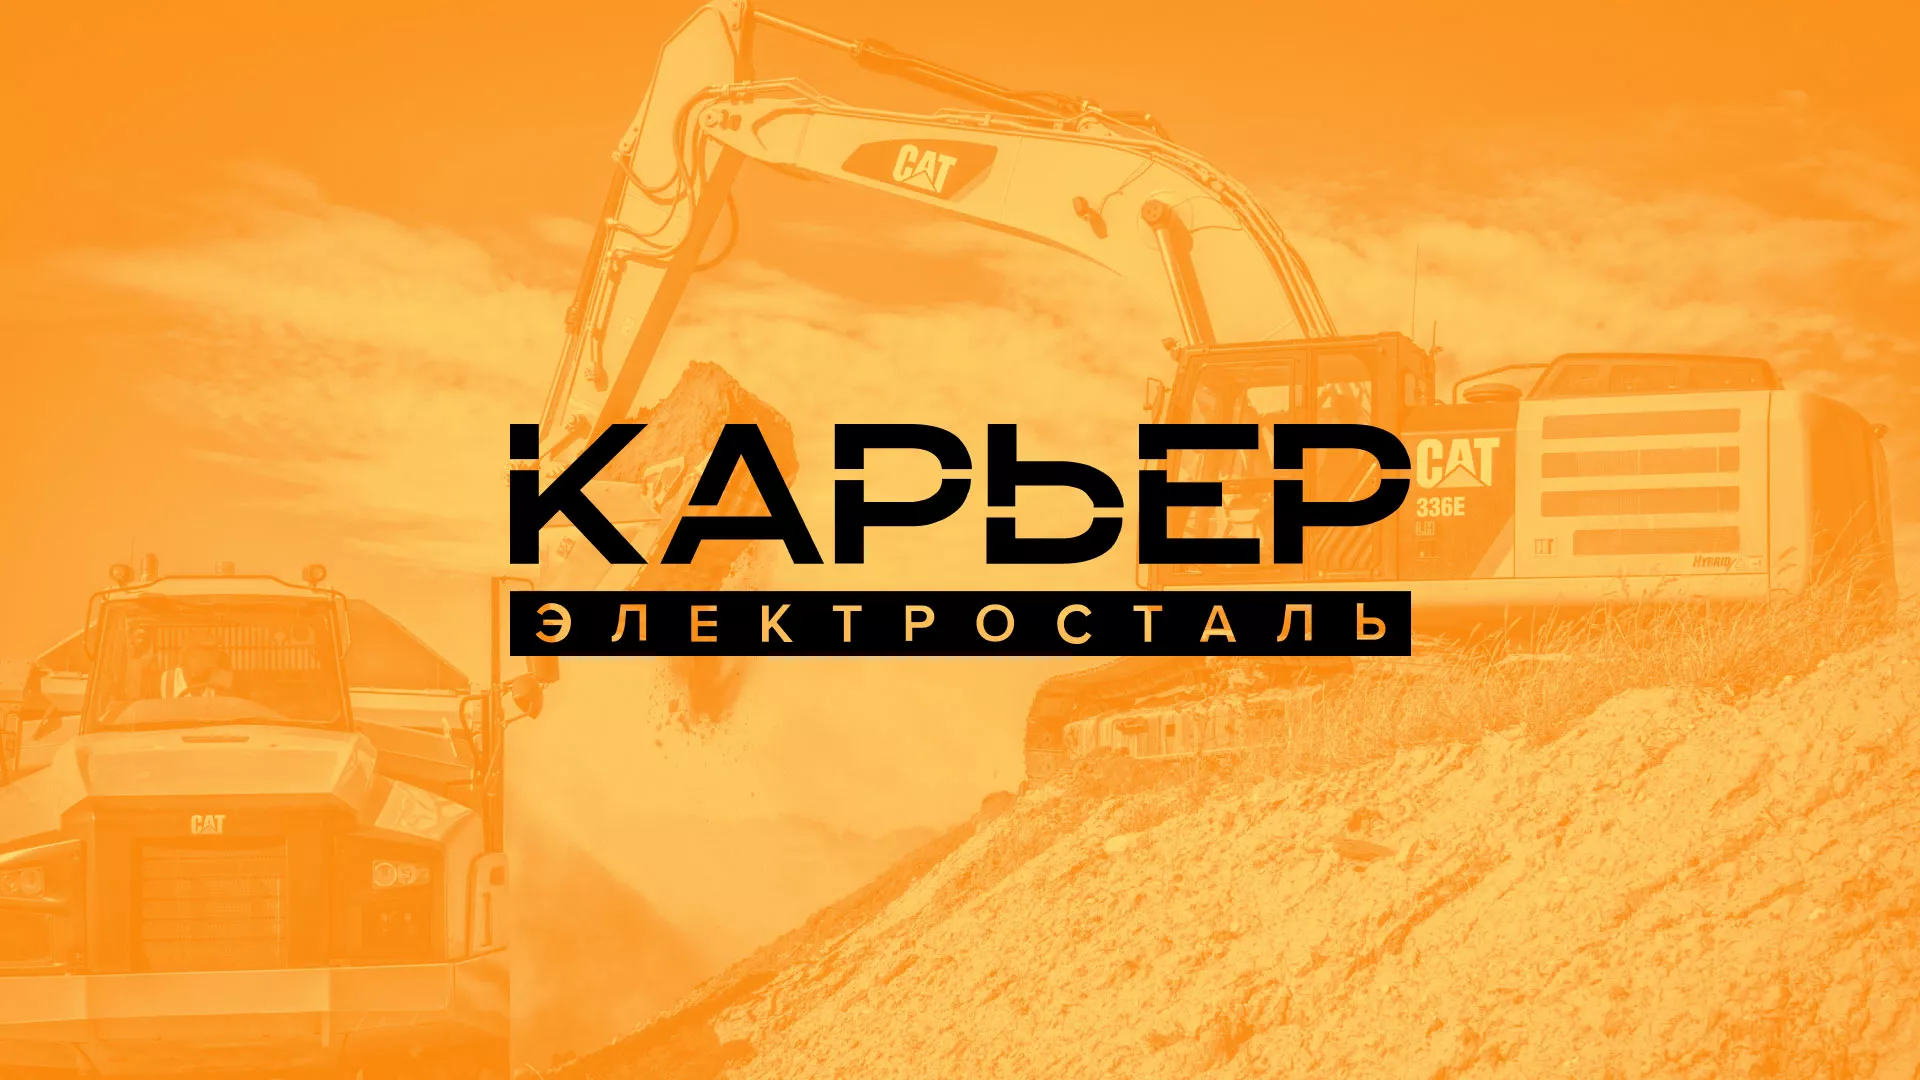 Разработка сайта по продаже нерудных материалов «Карьер» в Славске